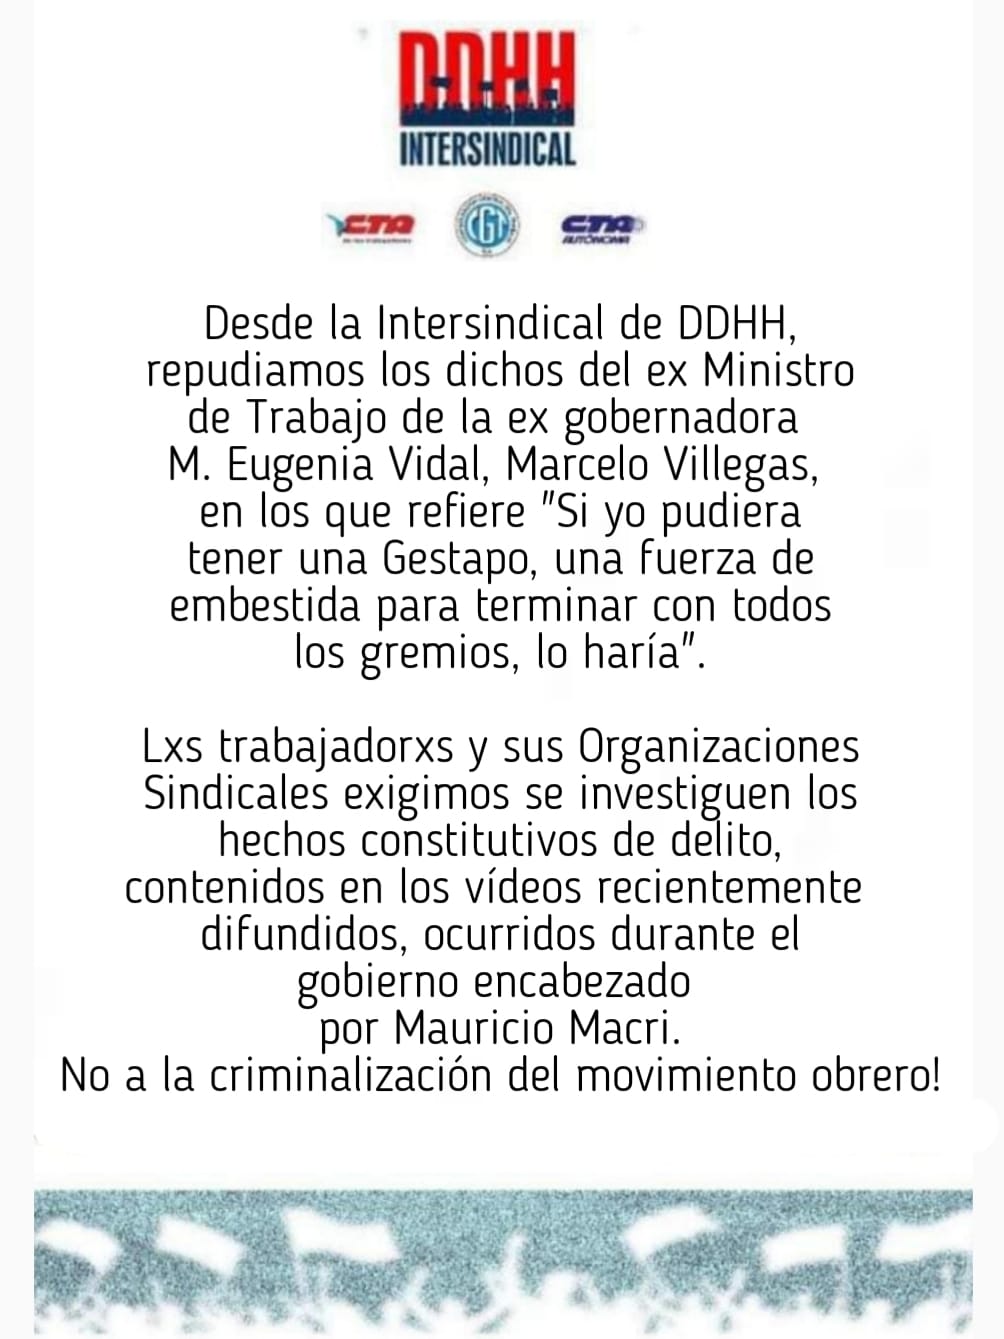 COMUNICADO DE LA INTERSINDICAL DE DDHH: ¡NO A LA CRIMINALIZACIÓN DEL MOVIMIENTO OBRERO!